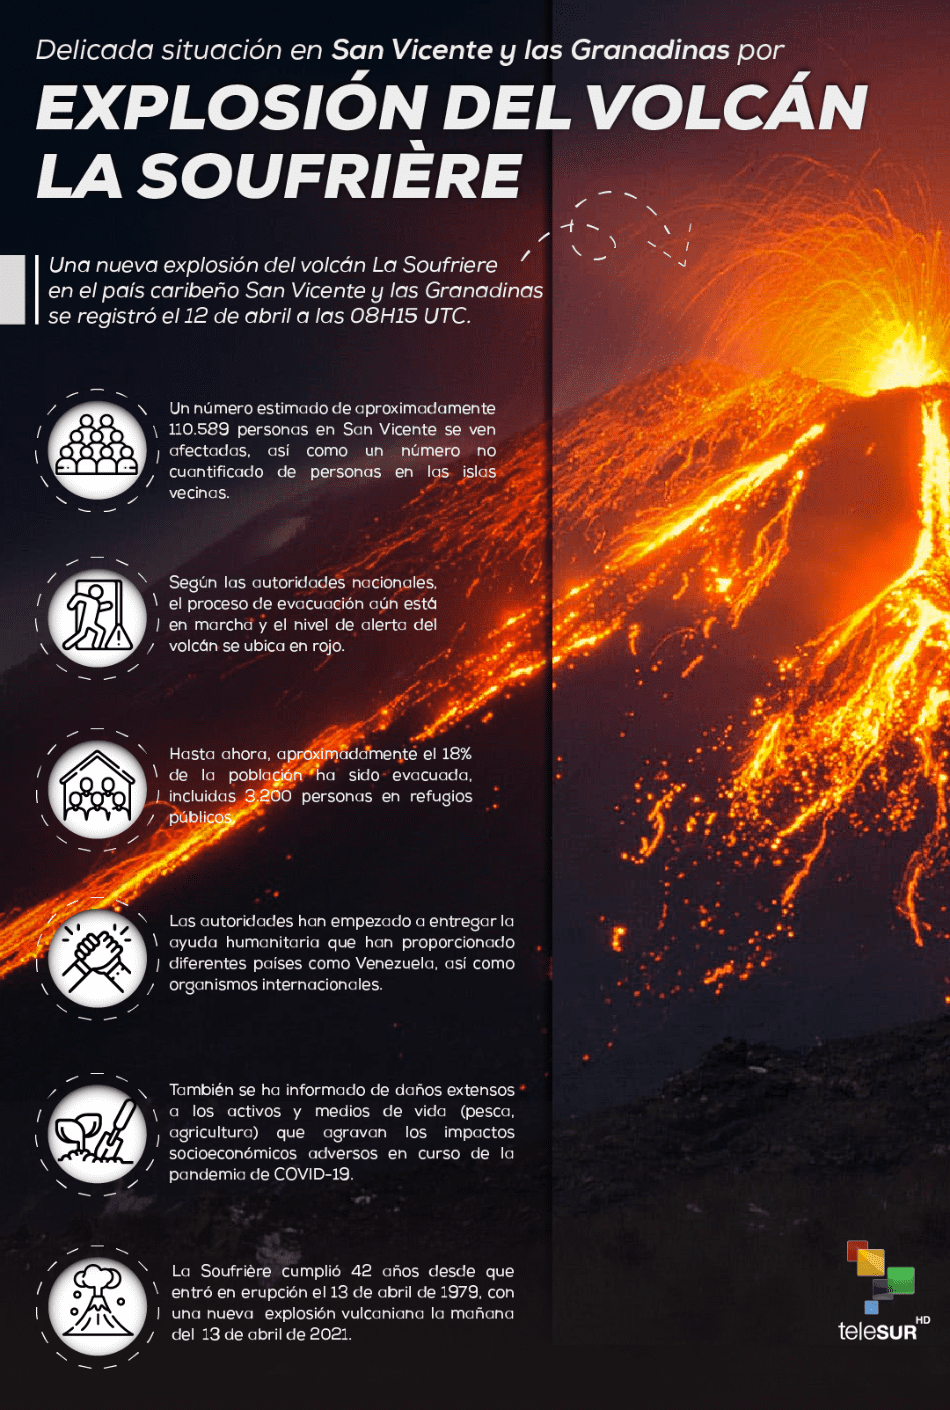 Volcán La Soufriére y su impacto en San Vicente y las Grandinas